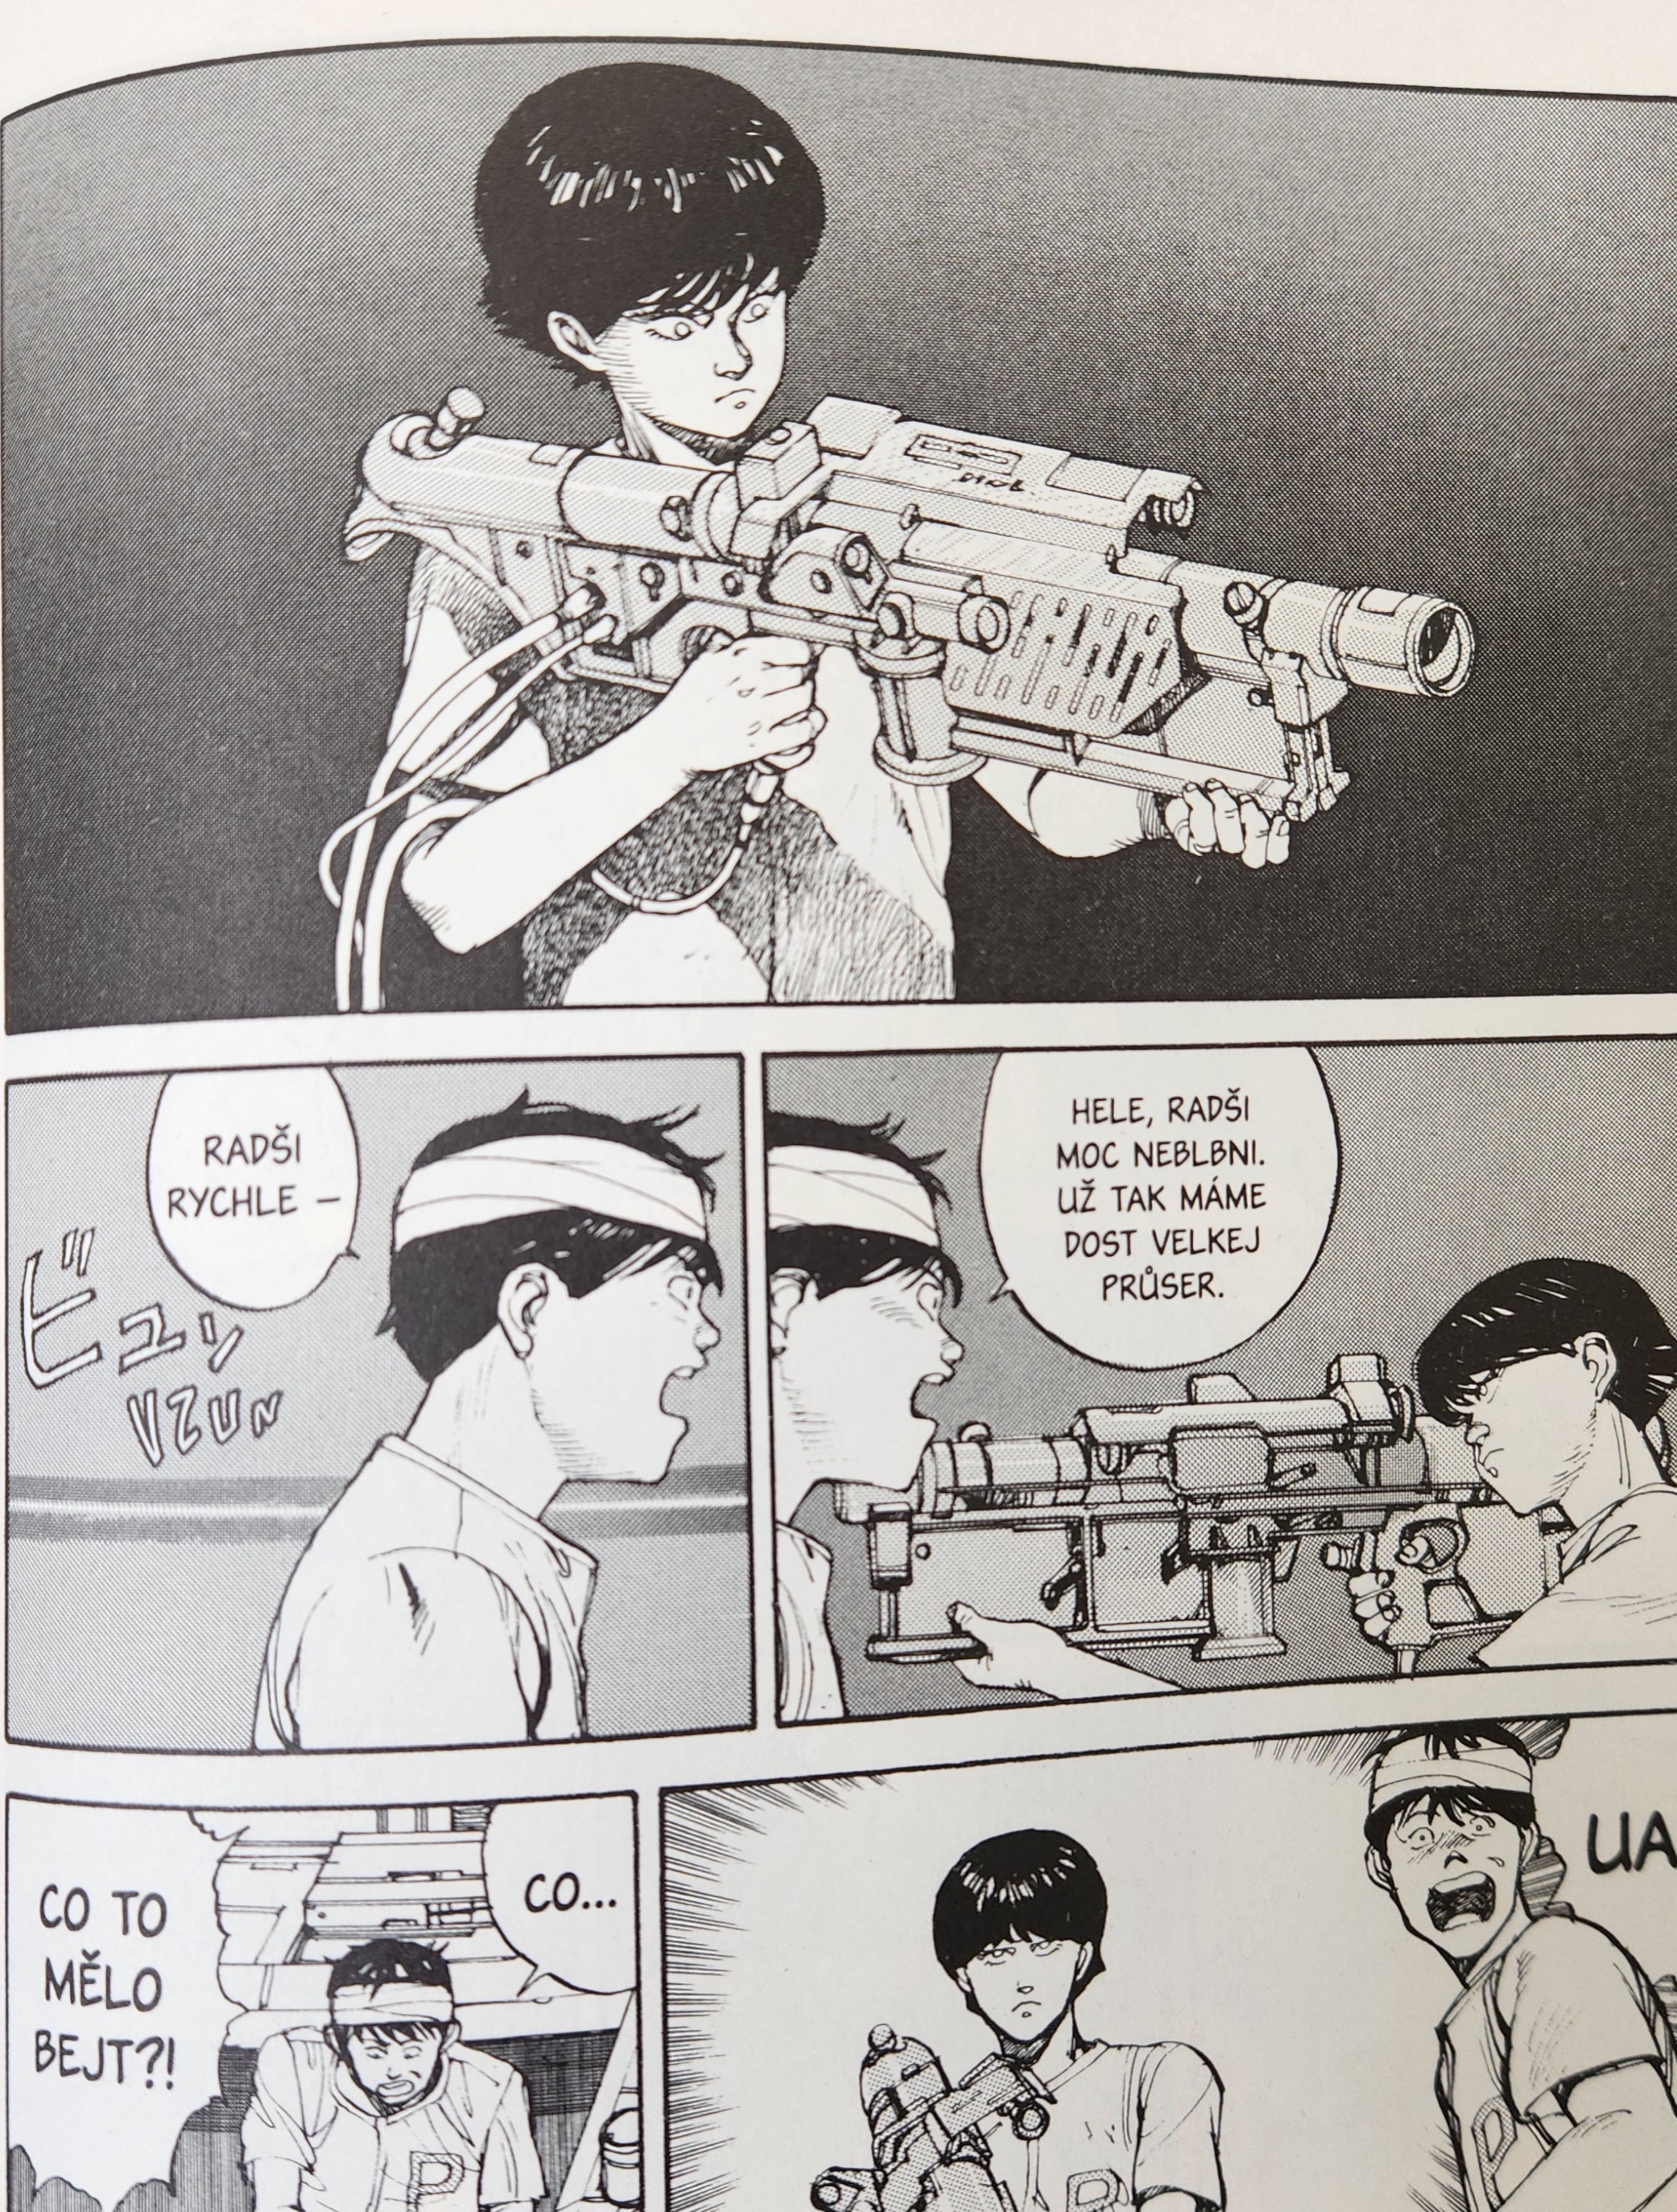 Manga Akira